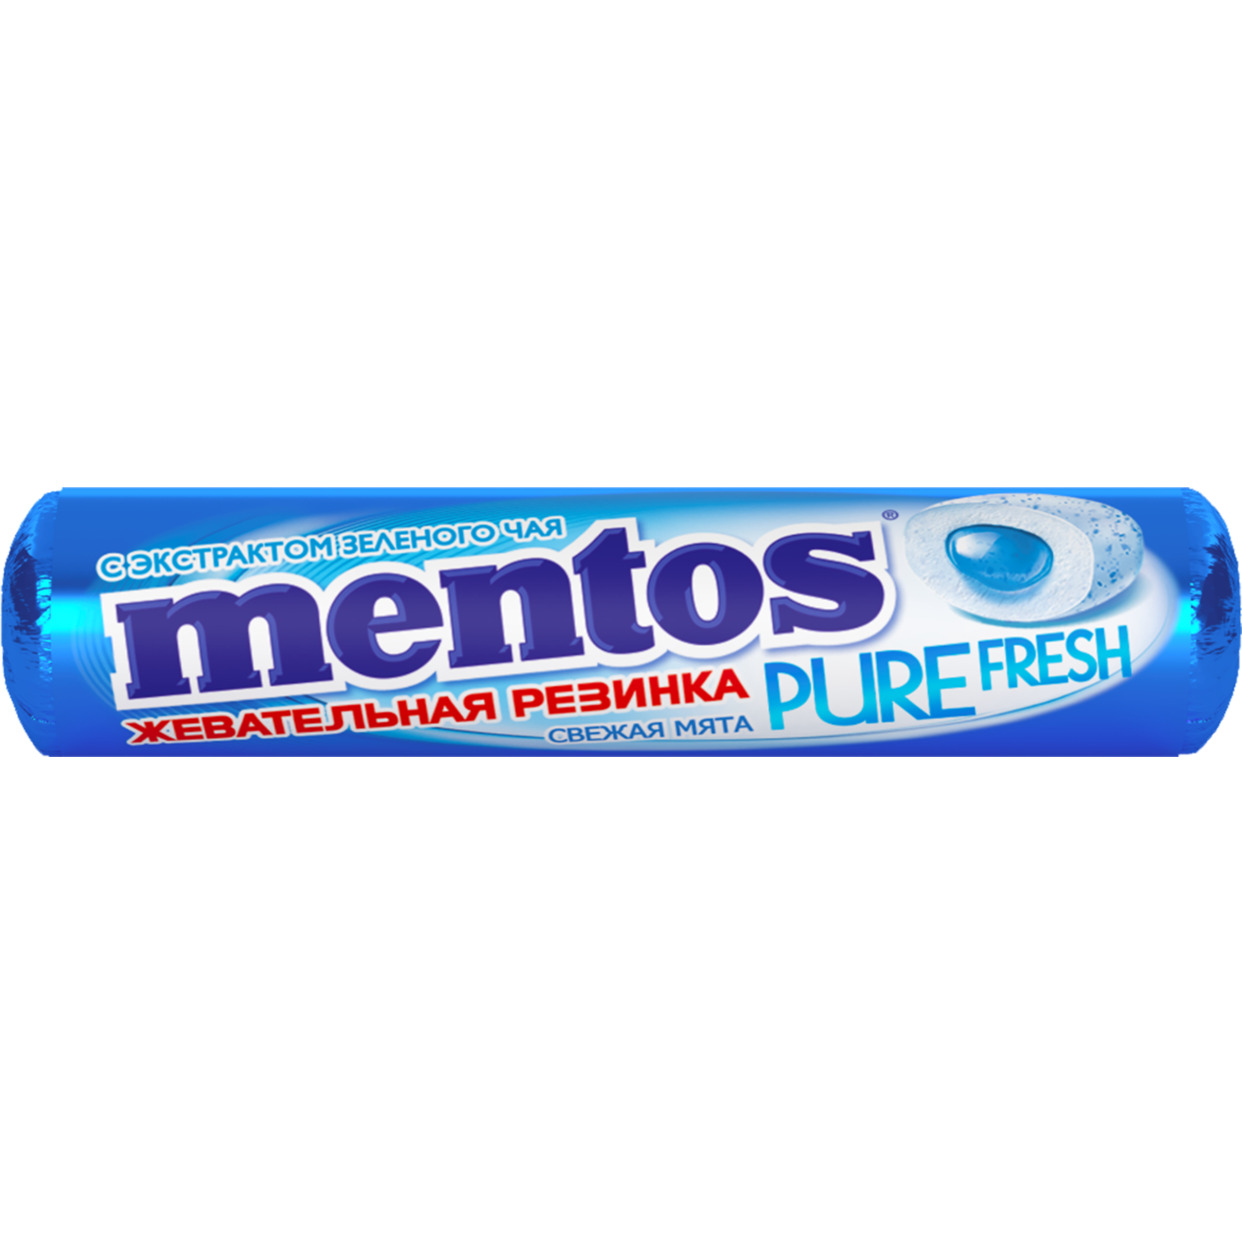 Жевательная резинка "Ментос"со вкусом мяты 15,5 г по акции в Пятерочке